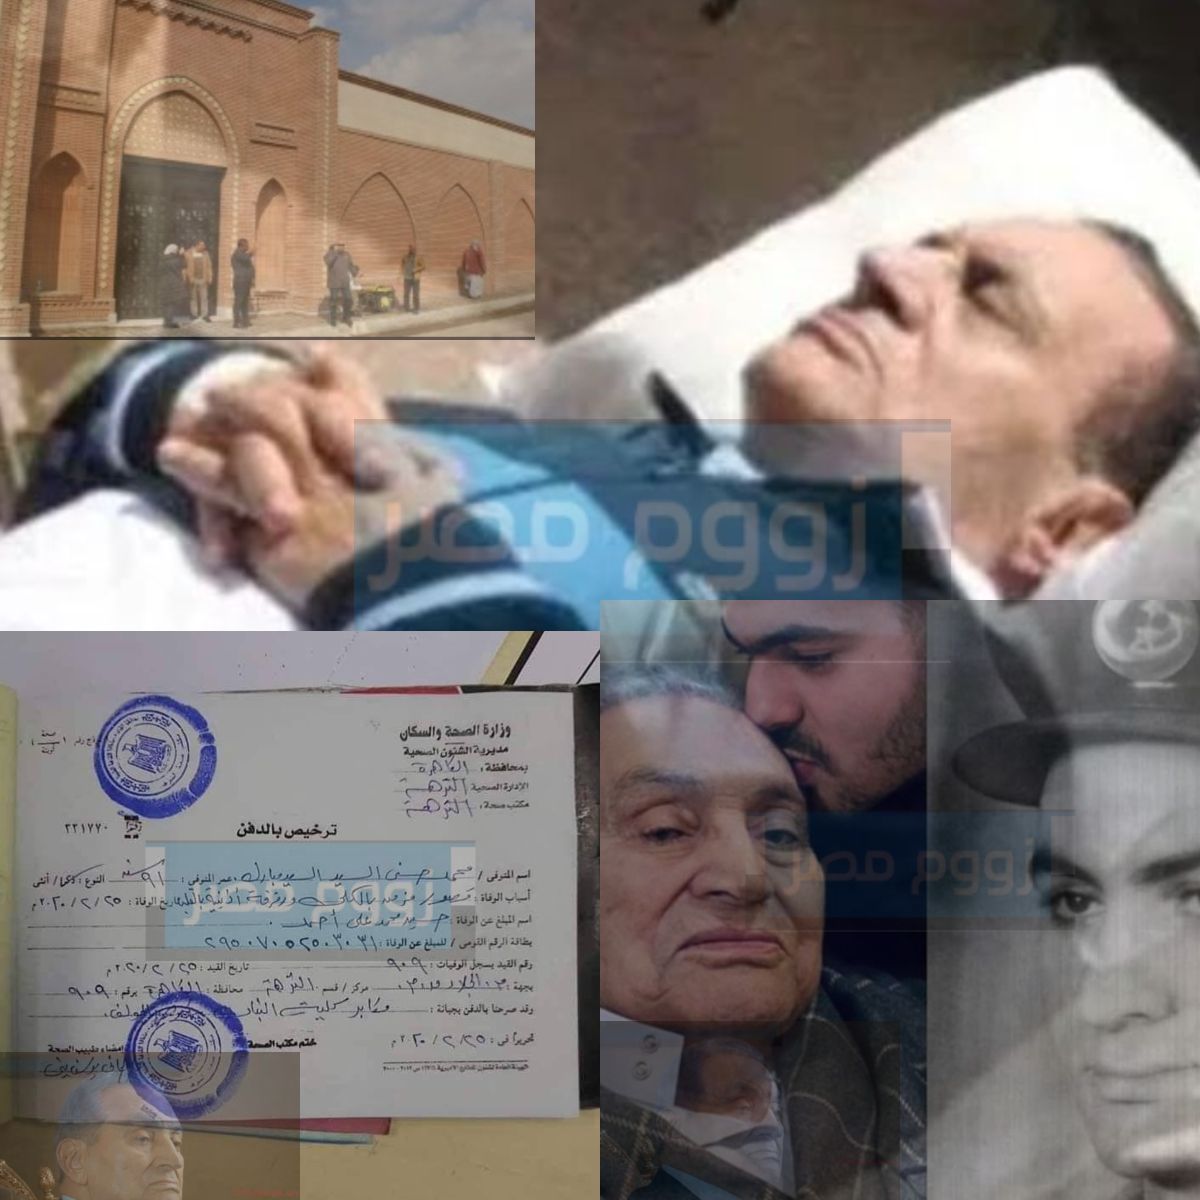 سبب وفاة محمد حسني مبارك وفق التقارير الرسمية من مستشفى الجلاء العسكري